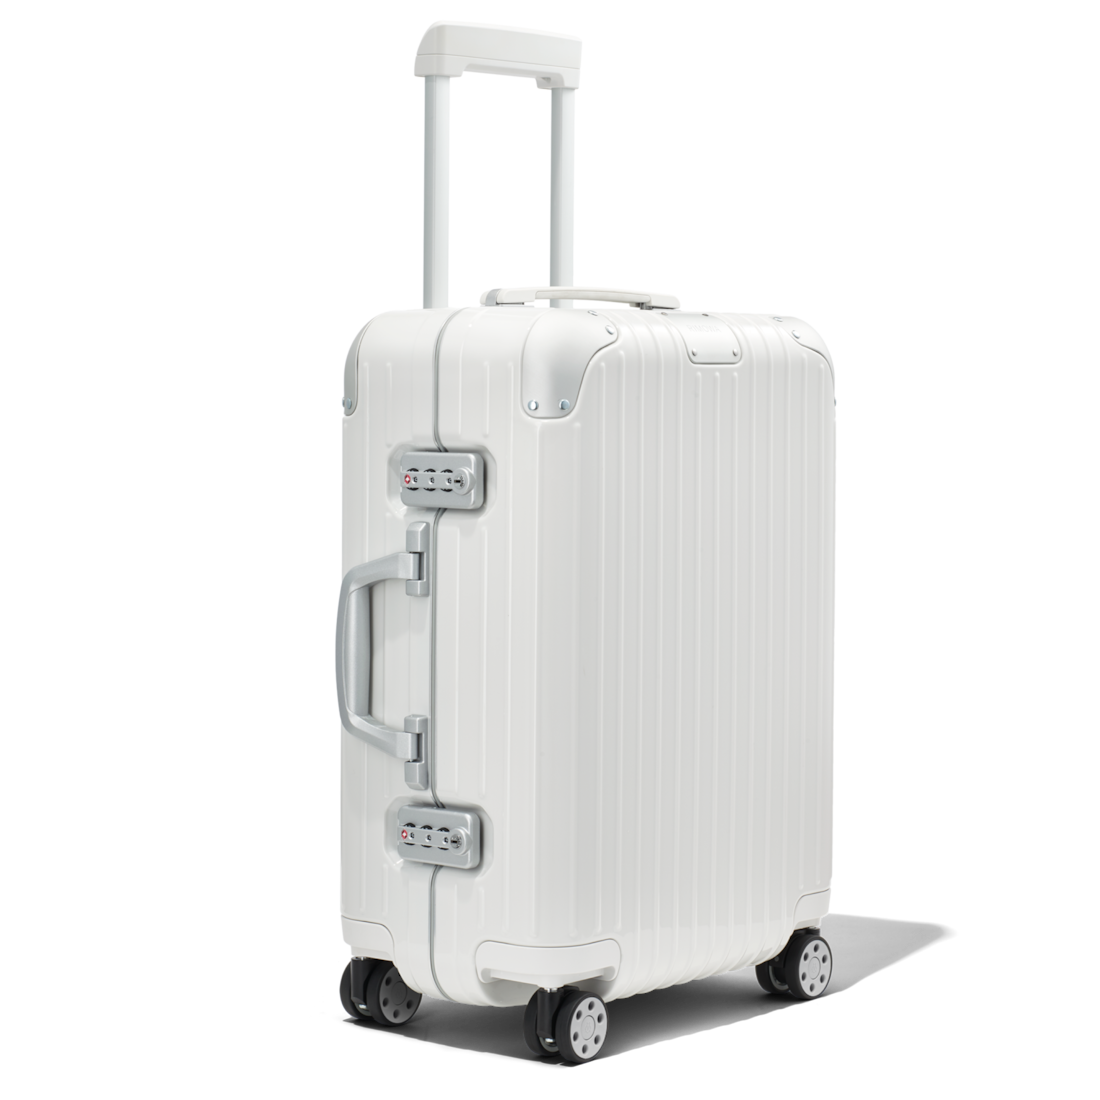 rimowa luggage cabin size